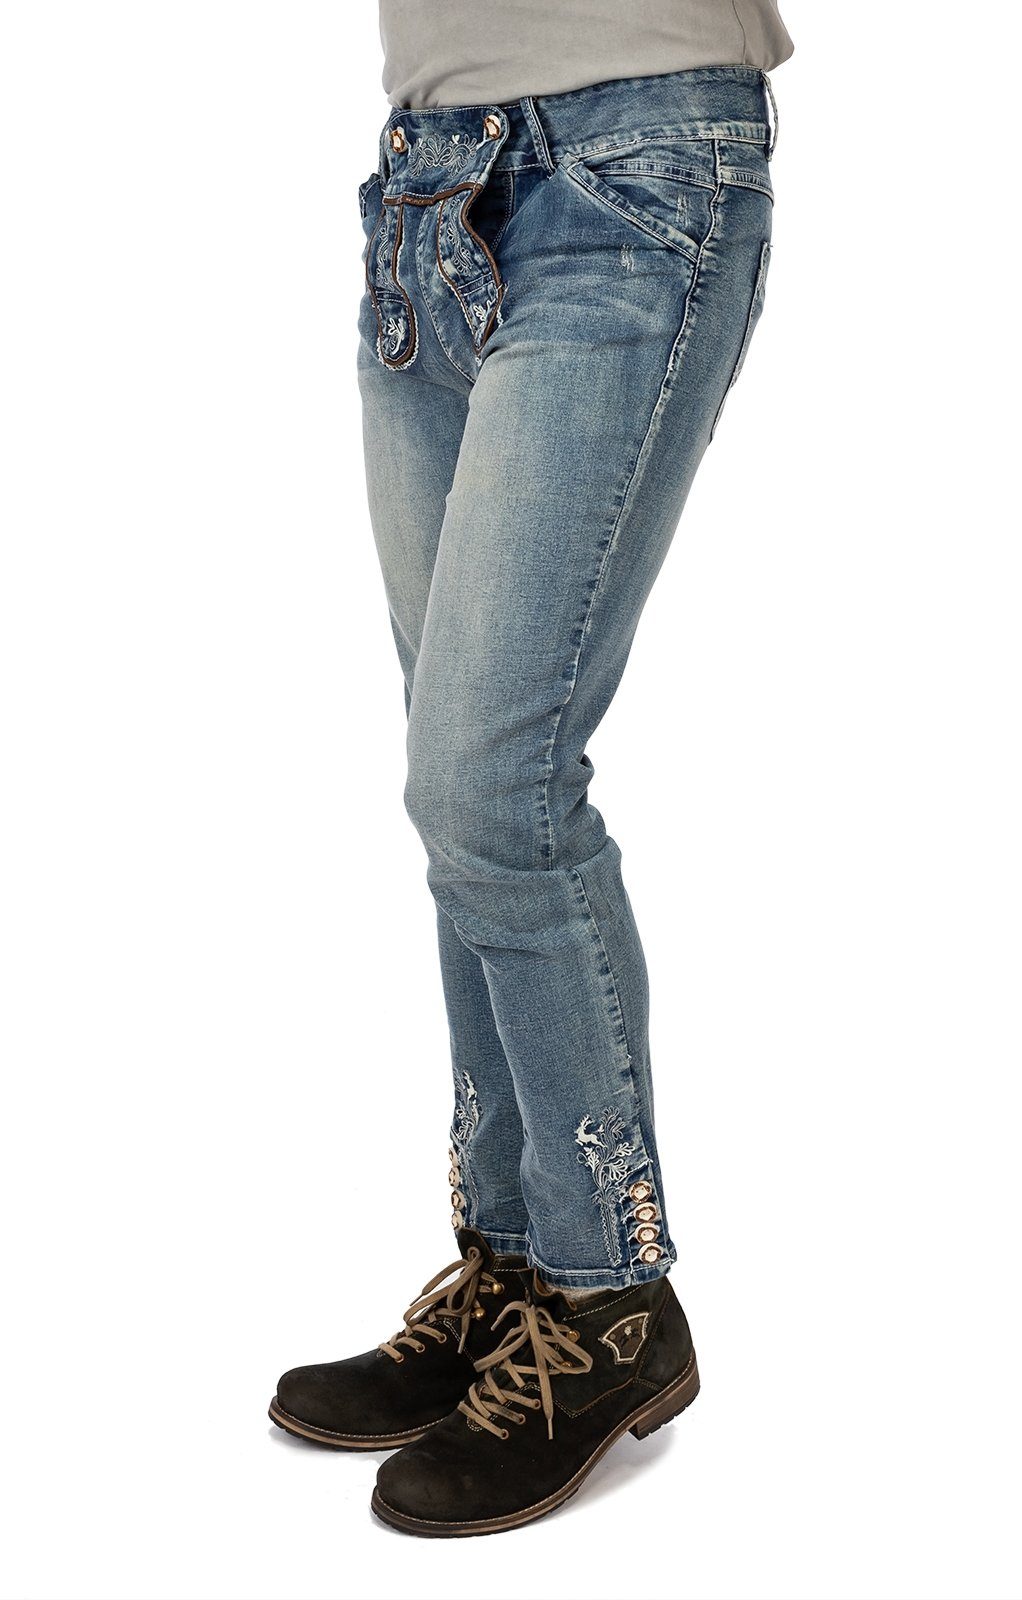 MarJo blau lang Jeanshose Trachtenhose GUSTL